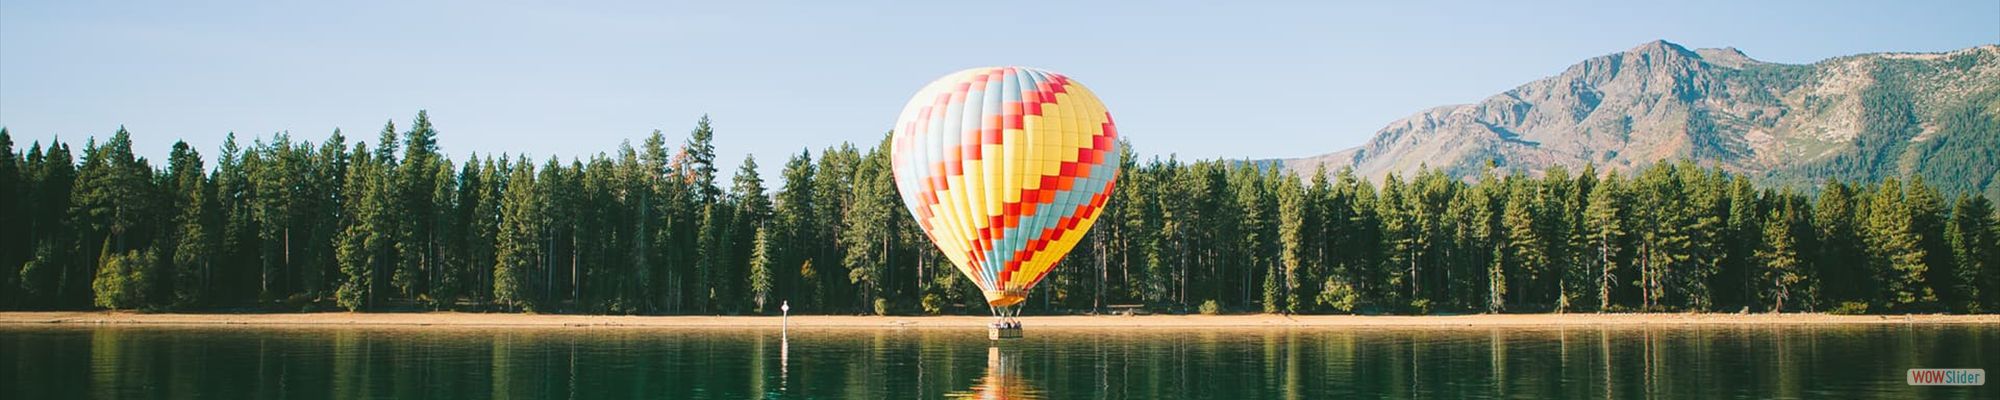 ballon-over-lake